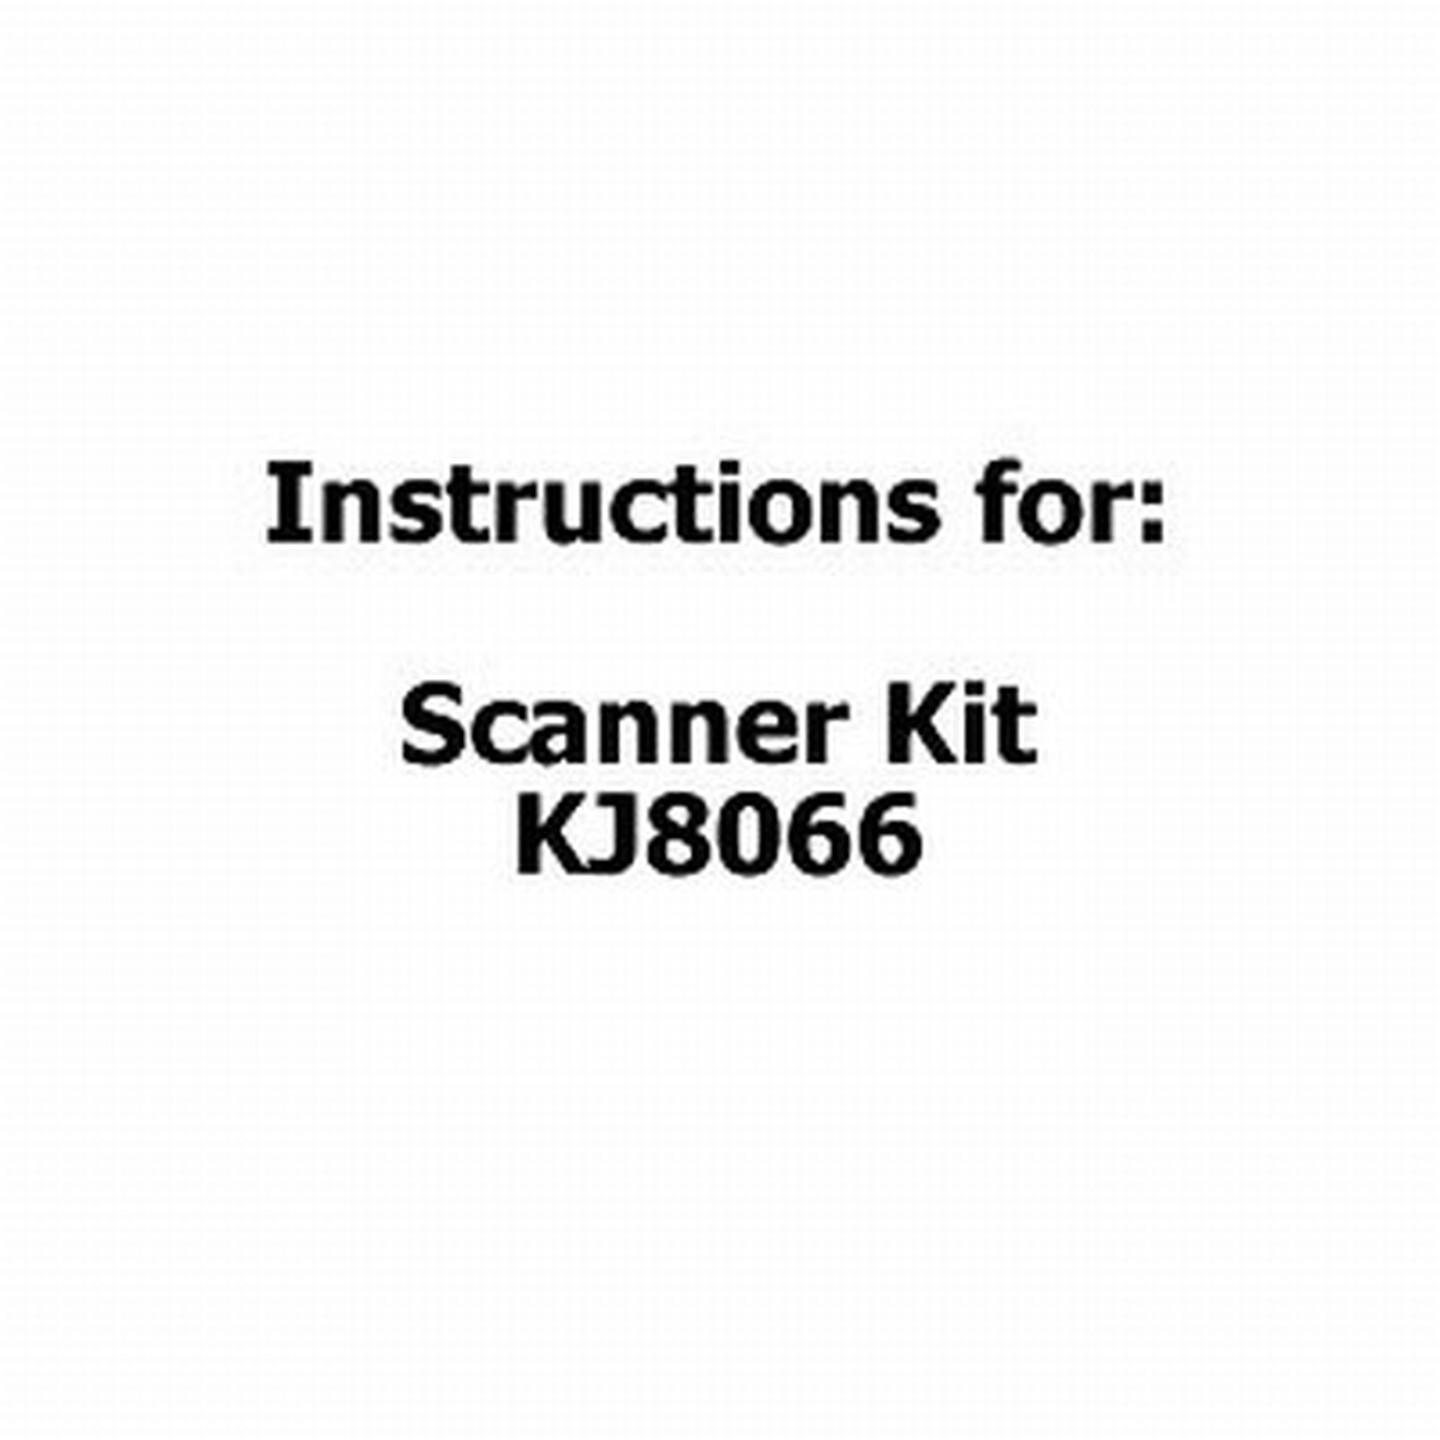 Instructions For Scanner Kit KJ8066